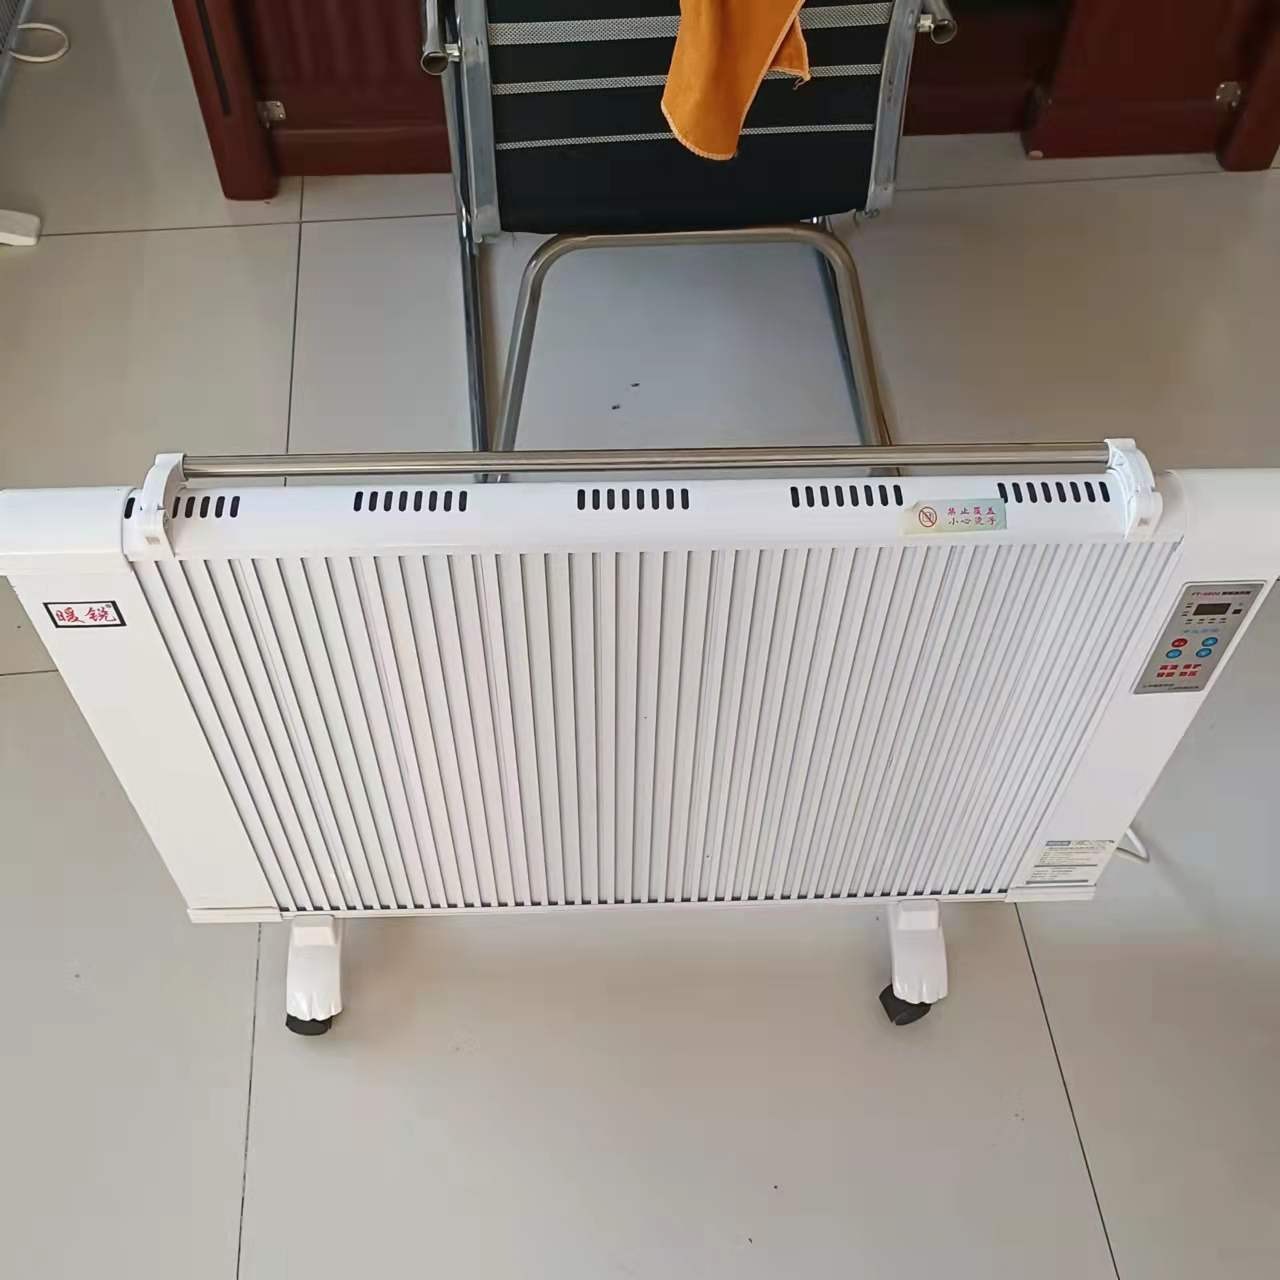 碳纤维电暖器 暖硕 数显挂式取暖器 NS-2远红外电暖器 厂家销售图片